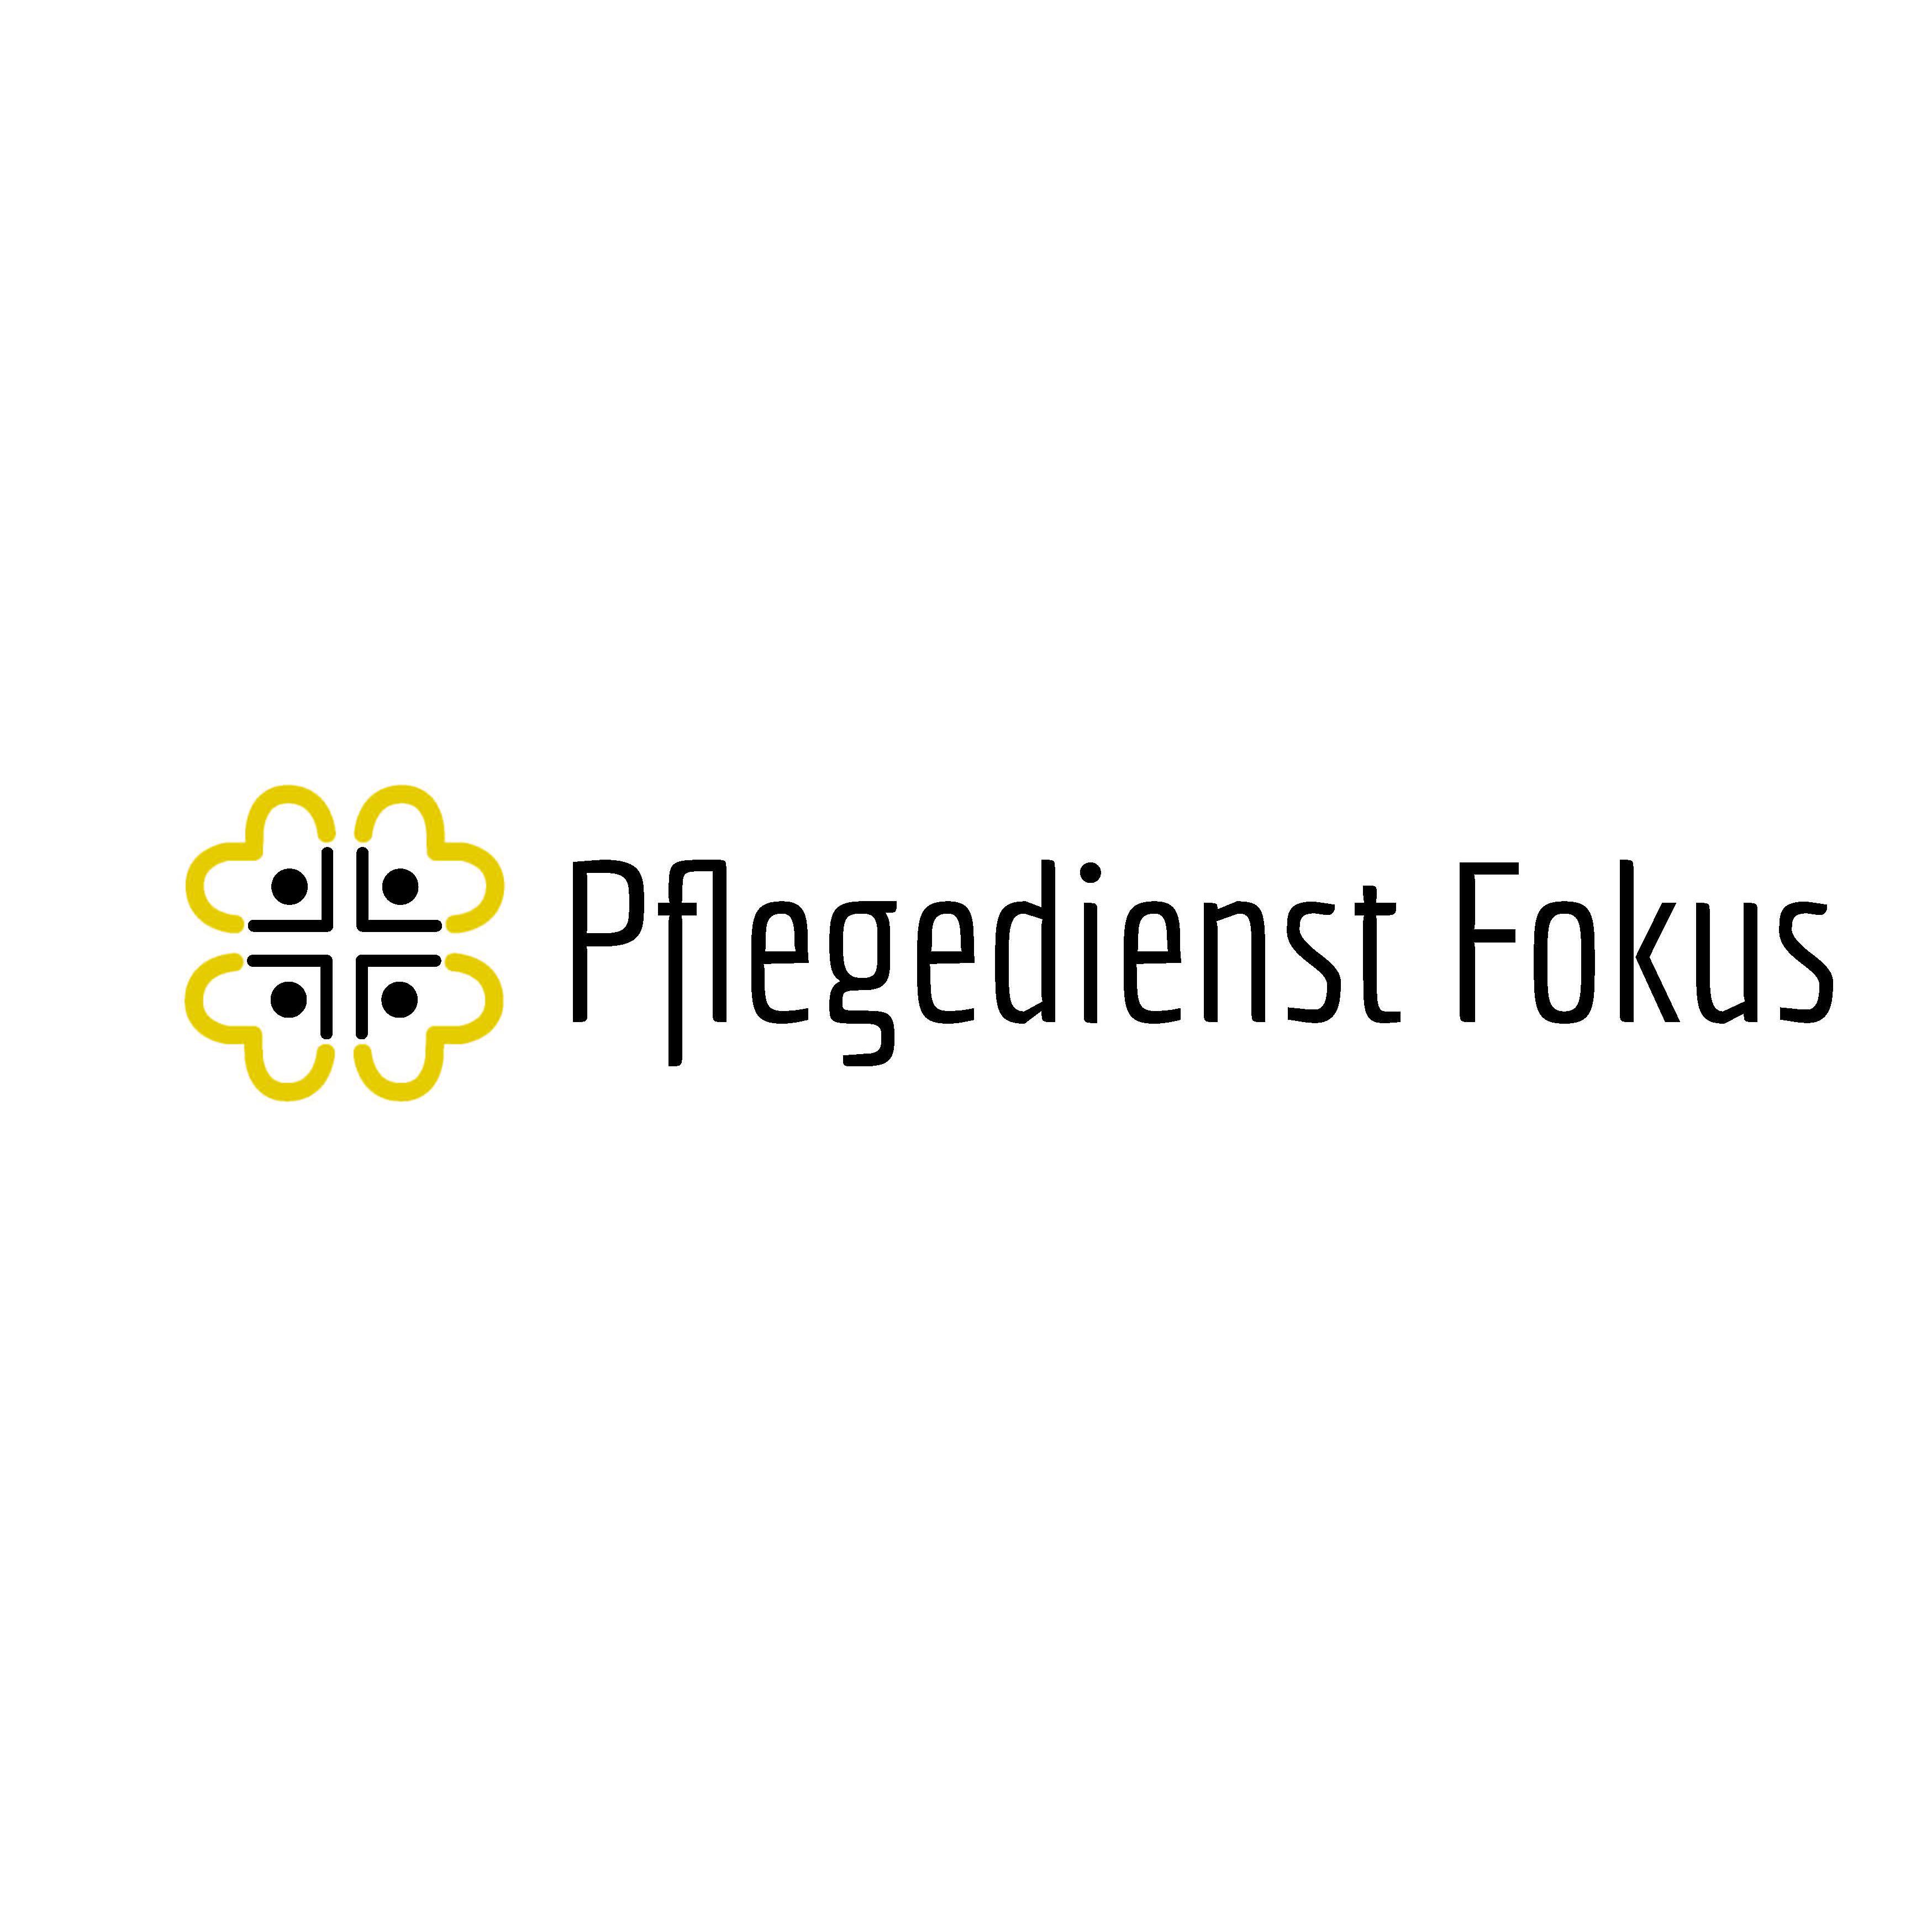 Pflegedienst Fokus in Berlin - Logo